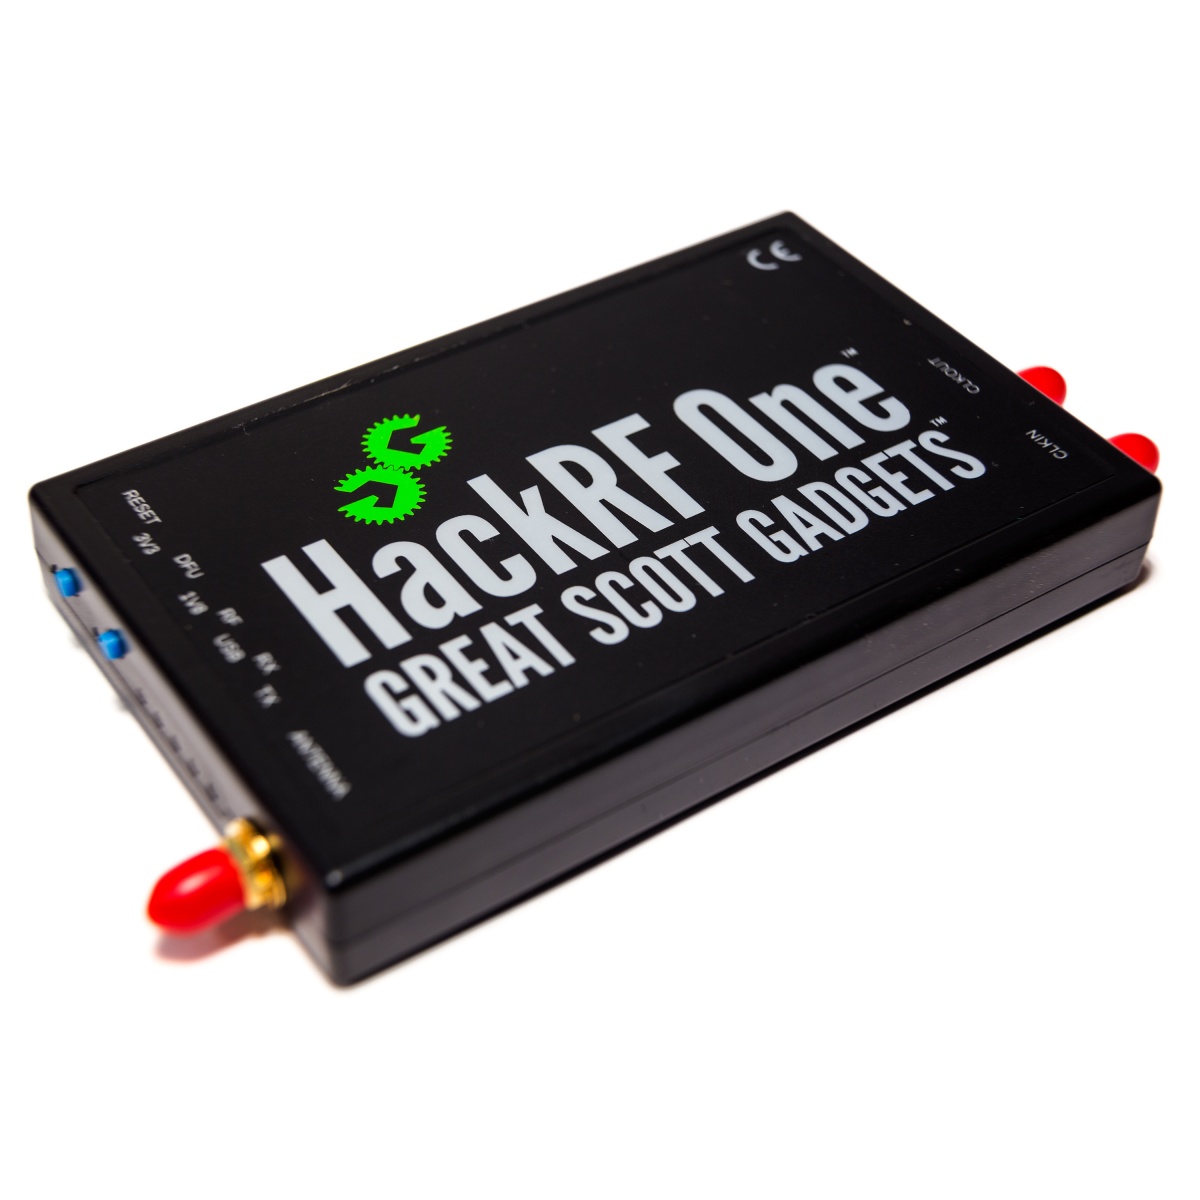 HackRF One 1MHz-6GHz Radio Platform Development Board Software